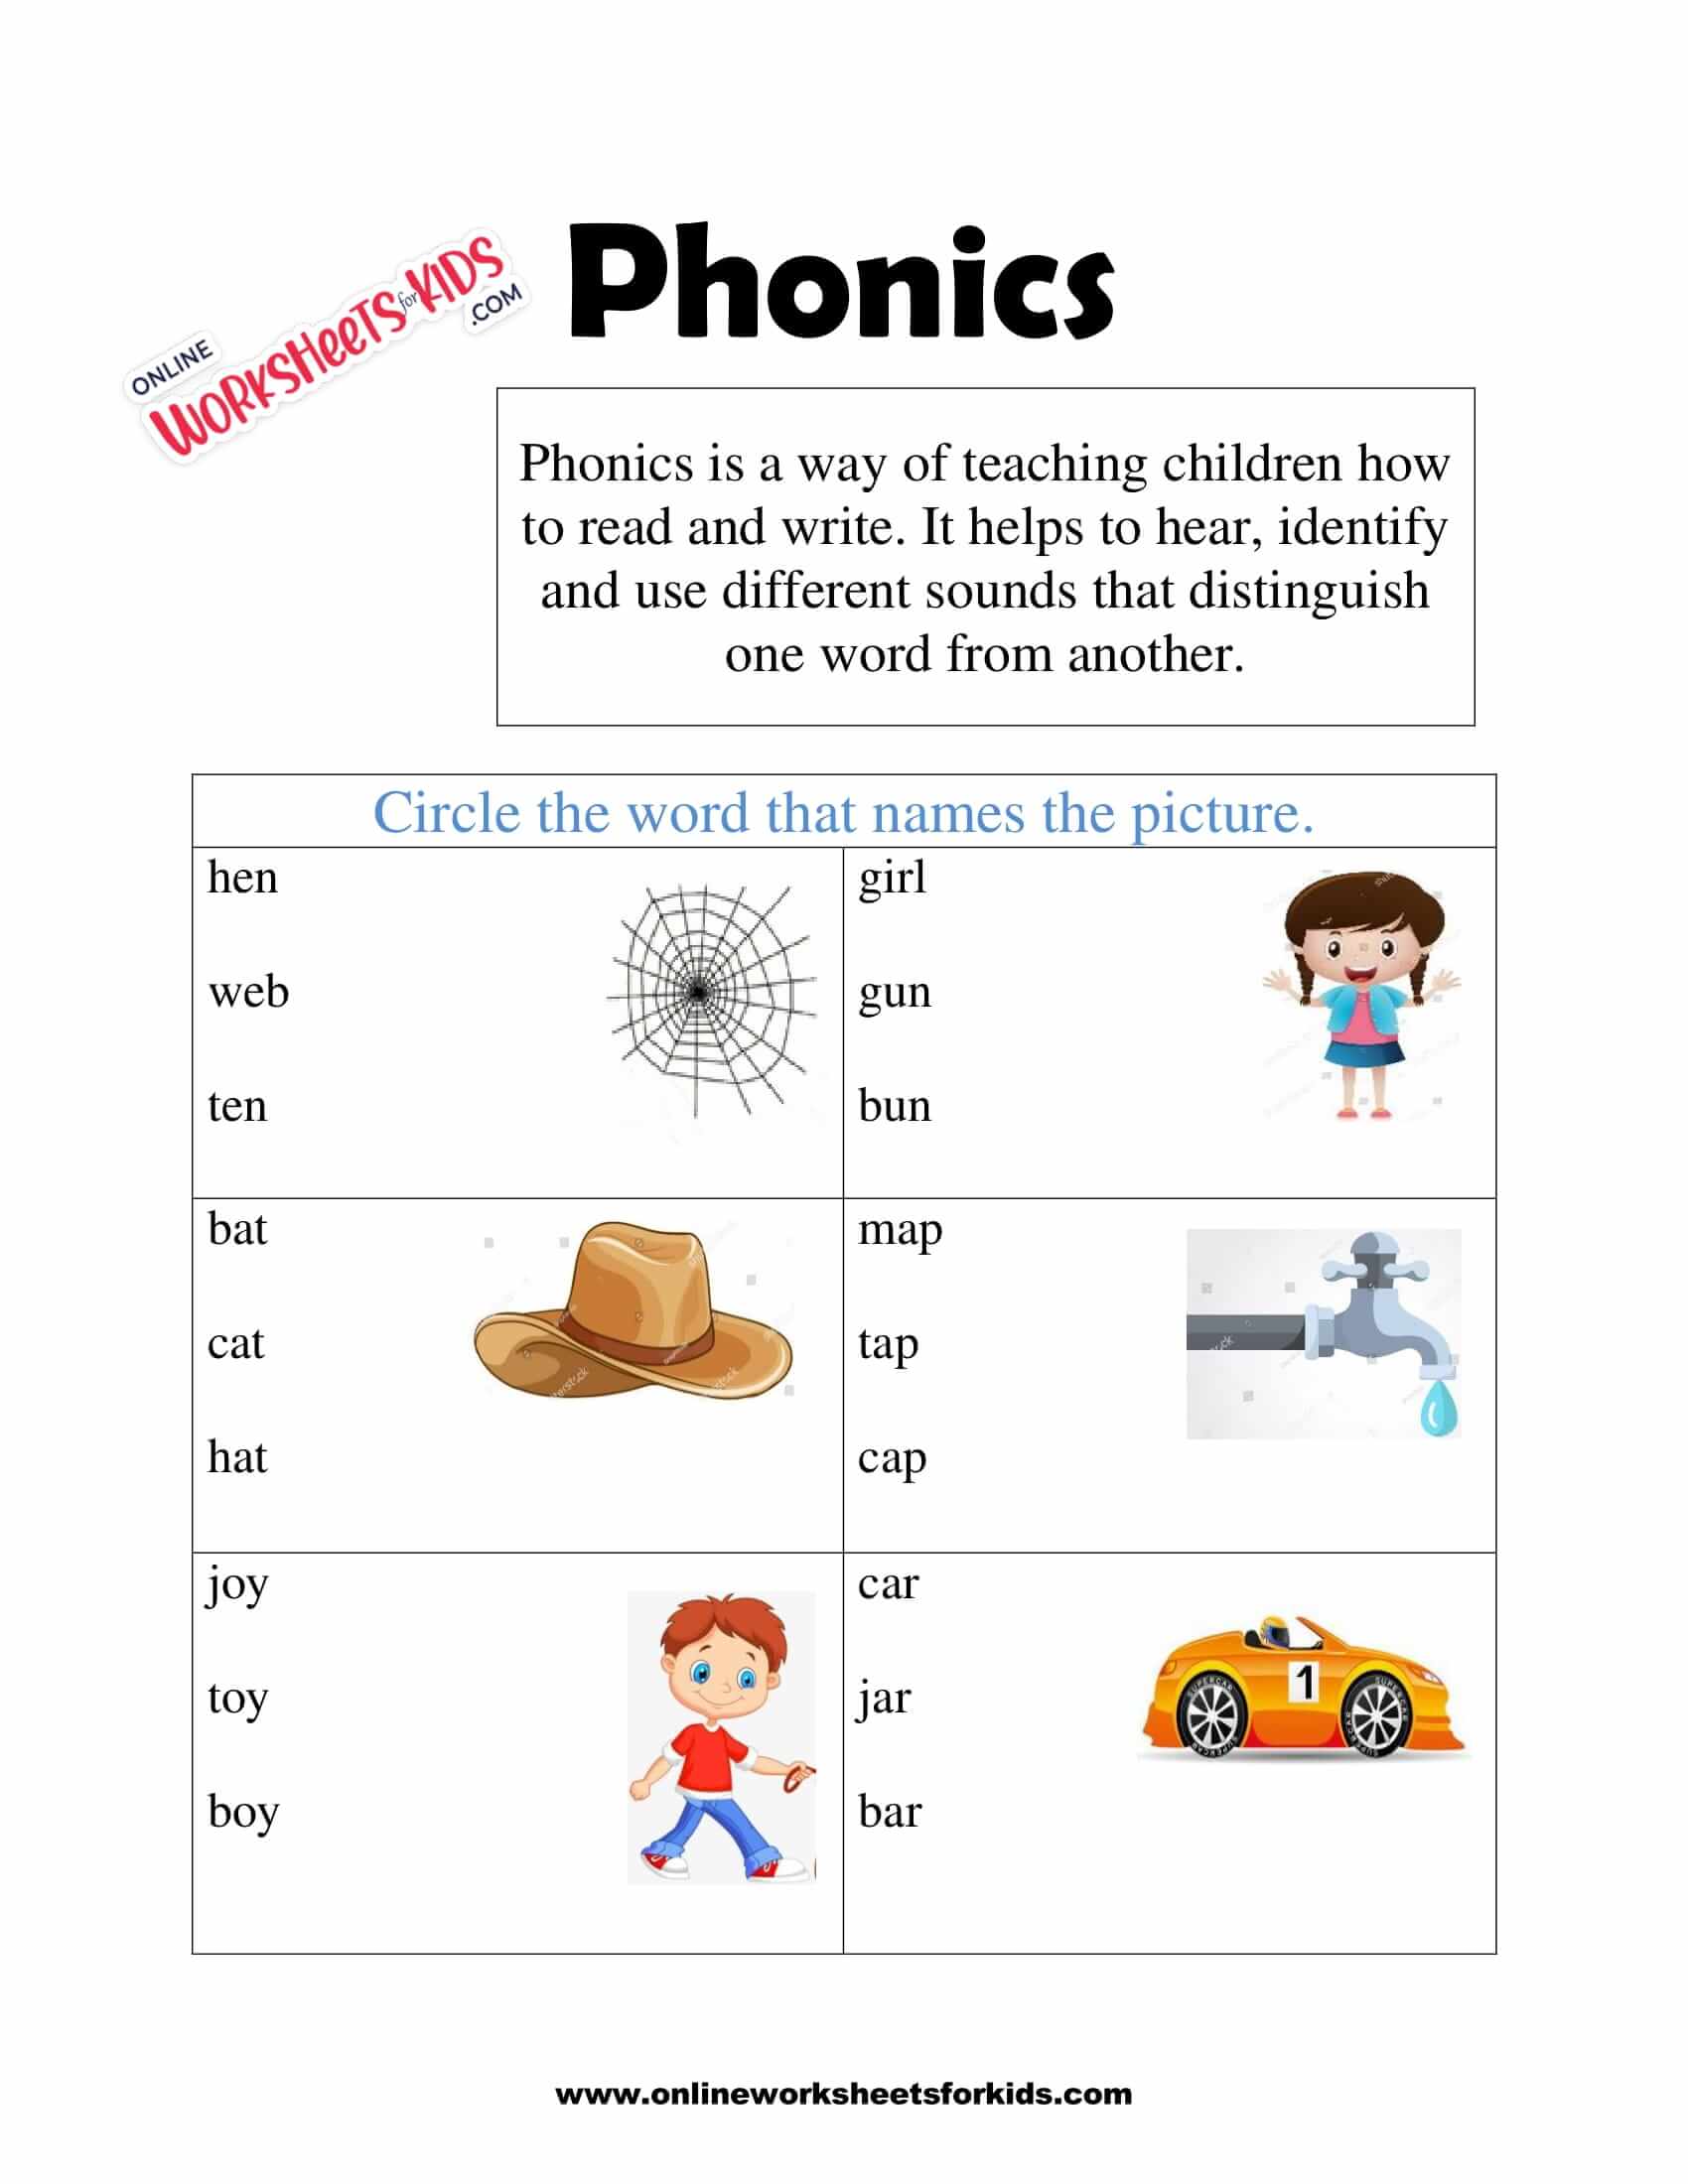 phonics-worksheets-4